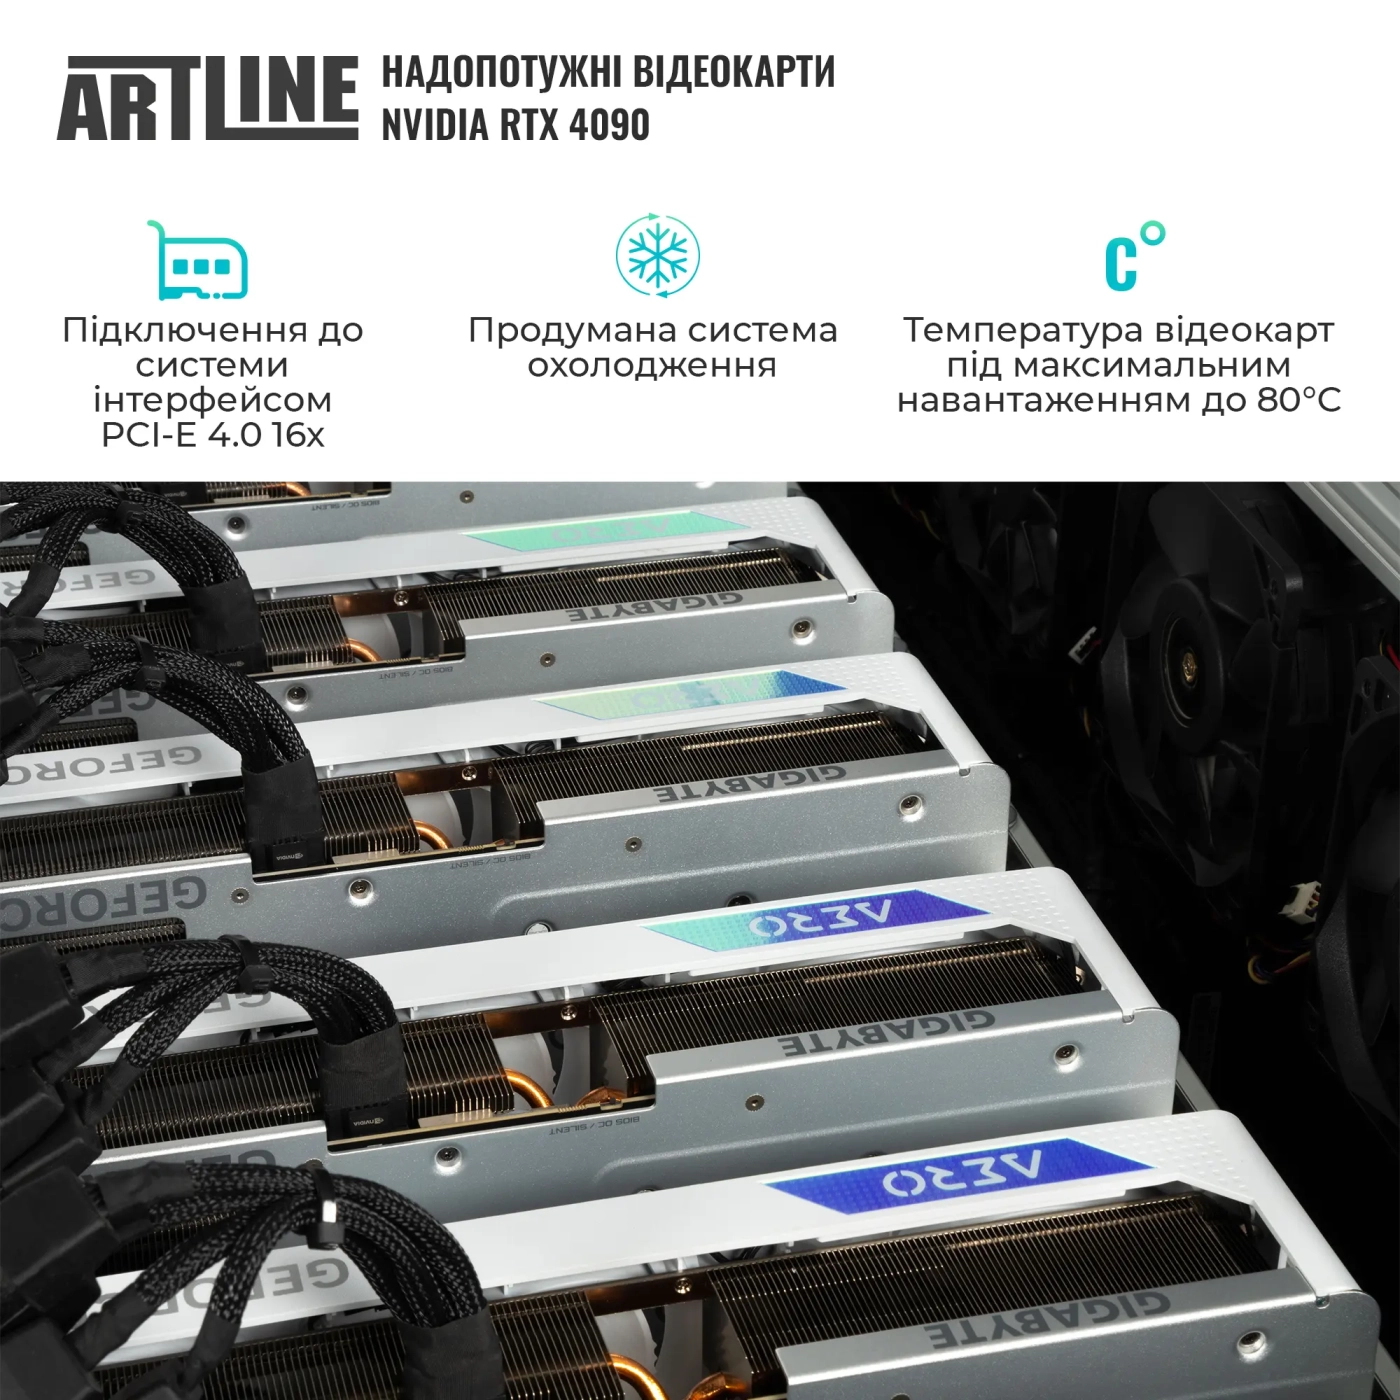 Купить Сервер ARTLINE Business R99 (R99v02) - фото 4